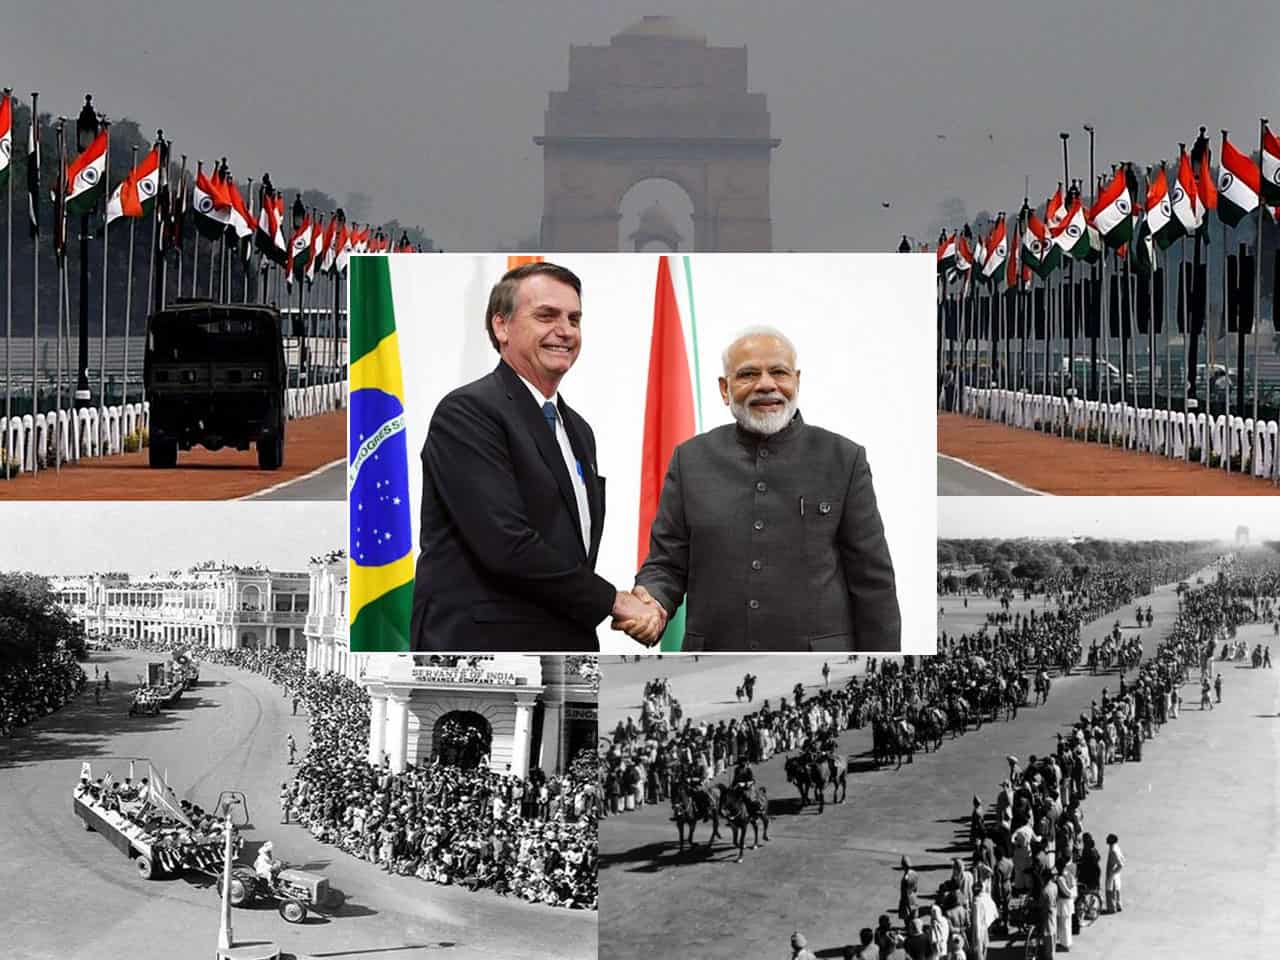 भारत गणतंत्र दिवस के बारे में 10 बातें जो आप नहीं जानते होंगे